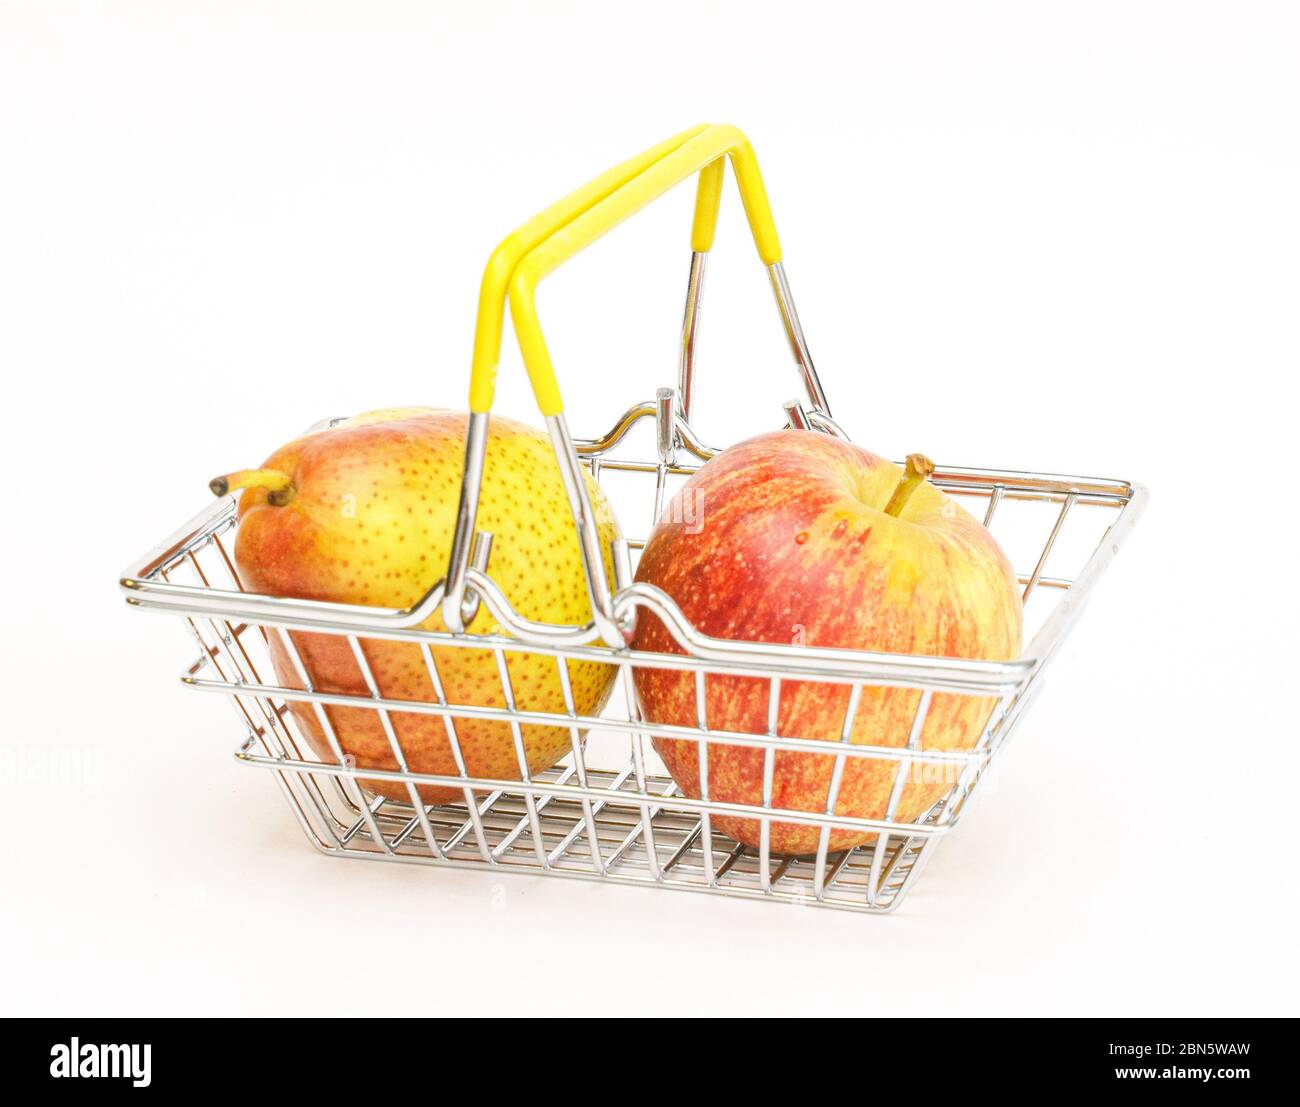 un piccolo cestino con frutta, mele, pere su sfondo bianco. Cibo sano, cibo vegetariano, verdure, shopping al supermercato. Foto Stock